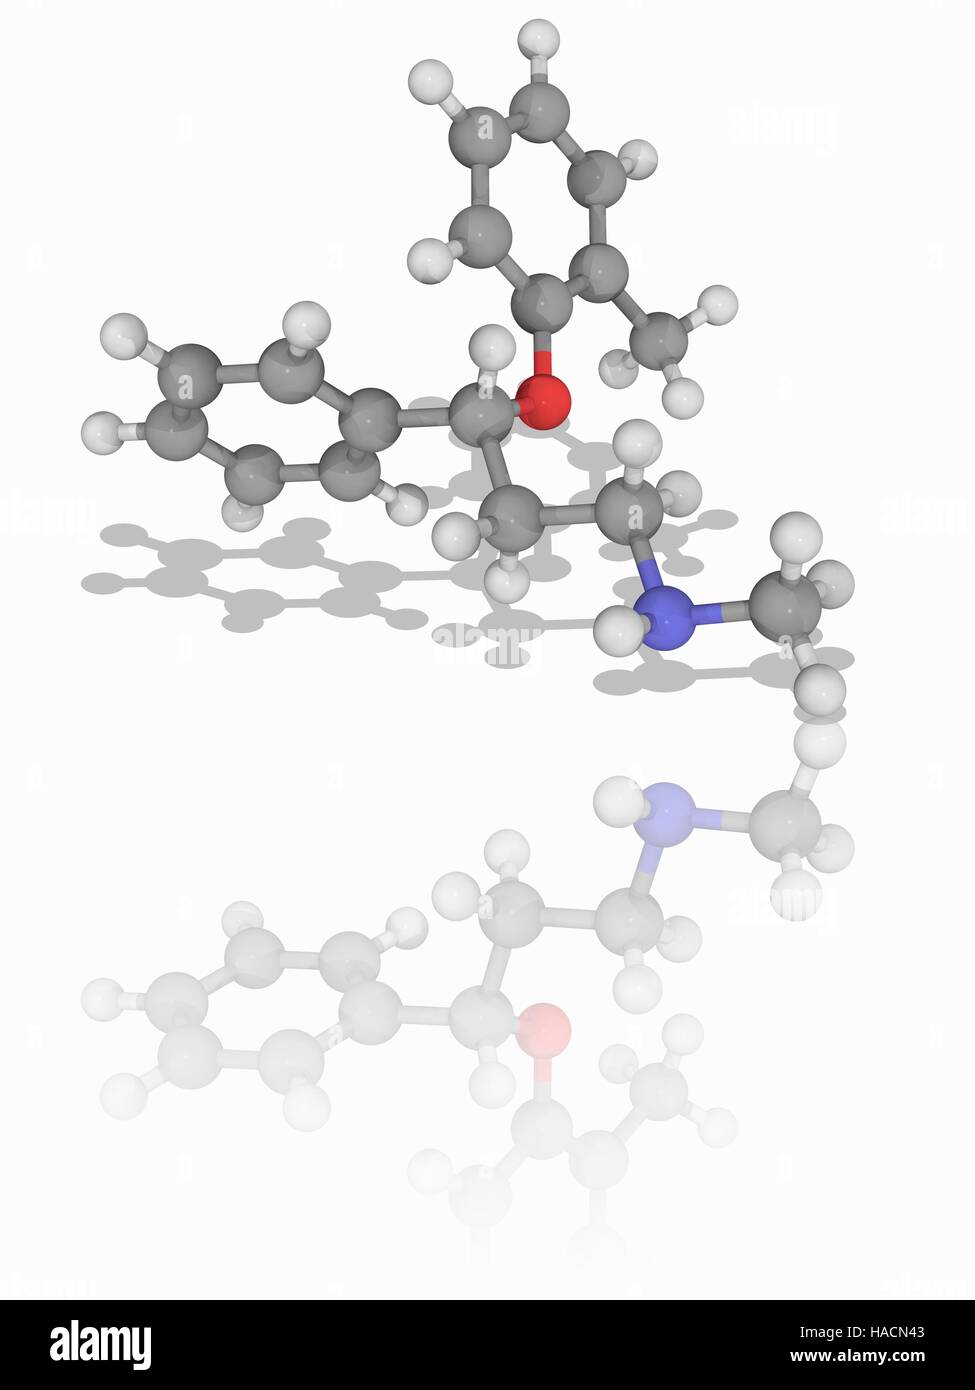 Atomoxetin. Molekulares Modell des Medikament Atomoxetine (C17. H21. NAVI). Dieses Medikament dient der Behandlung von Aufmerksamkeits-Defizit-Hyperaktivitäts-Störung (ADHS). Atome als Kugeln dargestellt werden und sind farblich gekennzeichnet: Kohlenstoff (grau), Wasserstoff (weiß), Stickstoff (blau) und Sauerstoff (rot). Abbildung. Stockfoto